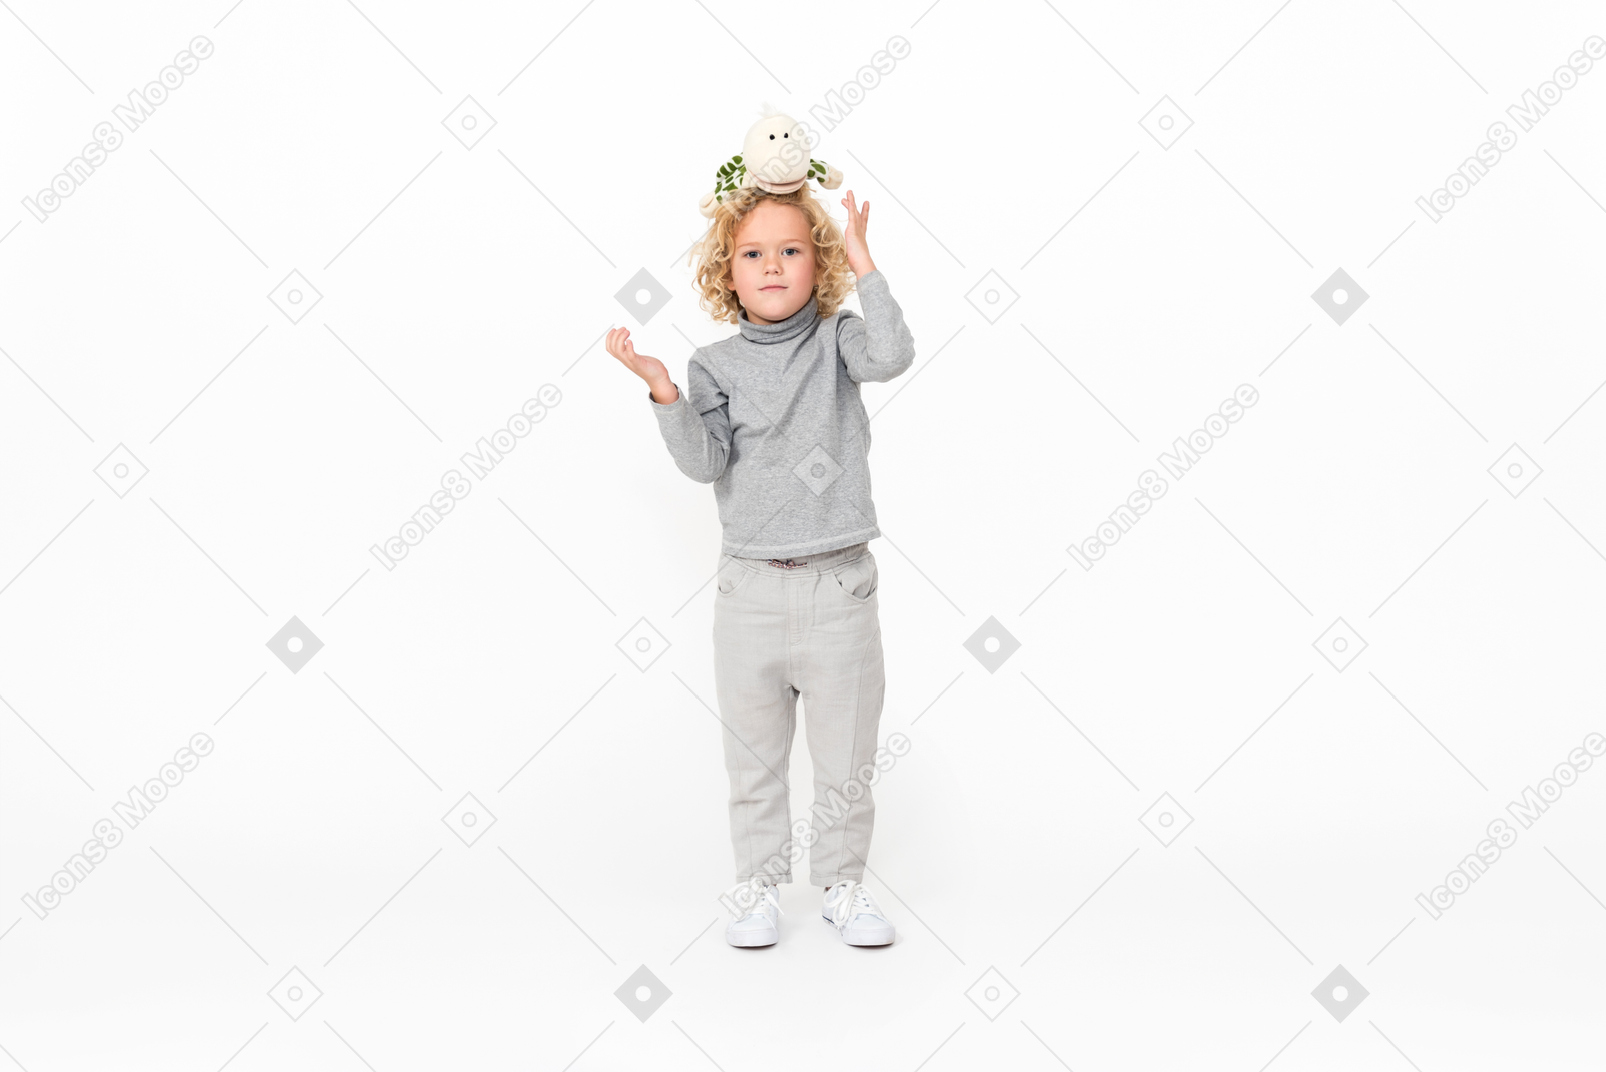 Малыш мальчик стоит с игрушкой на голове